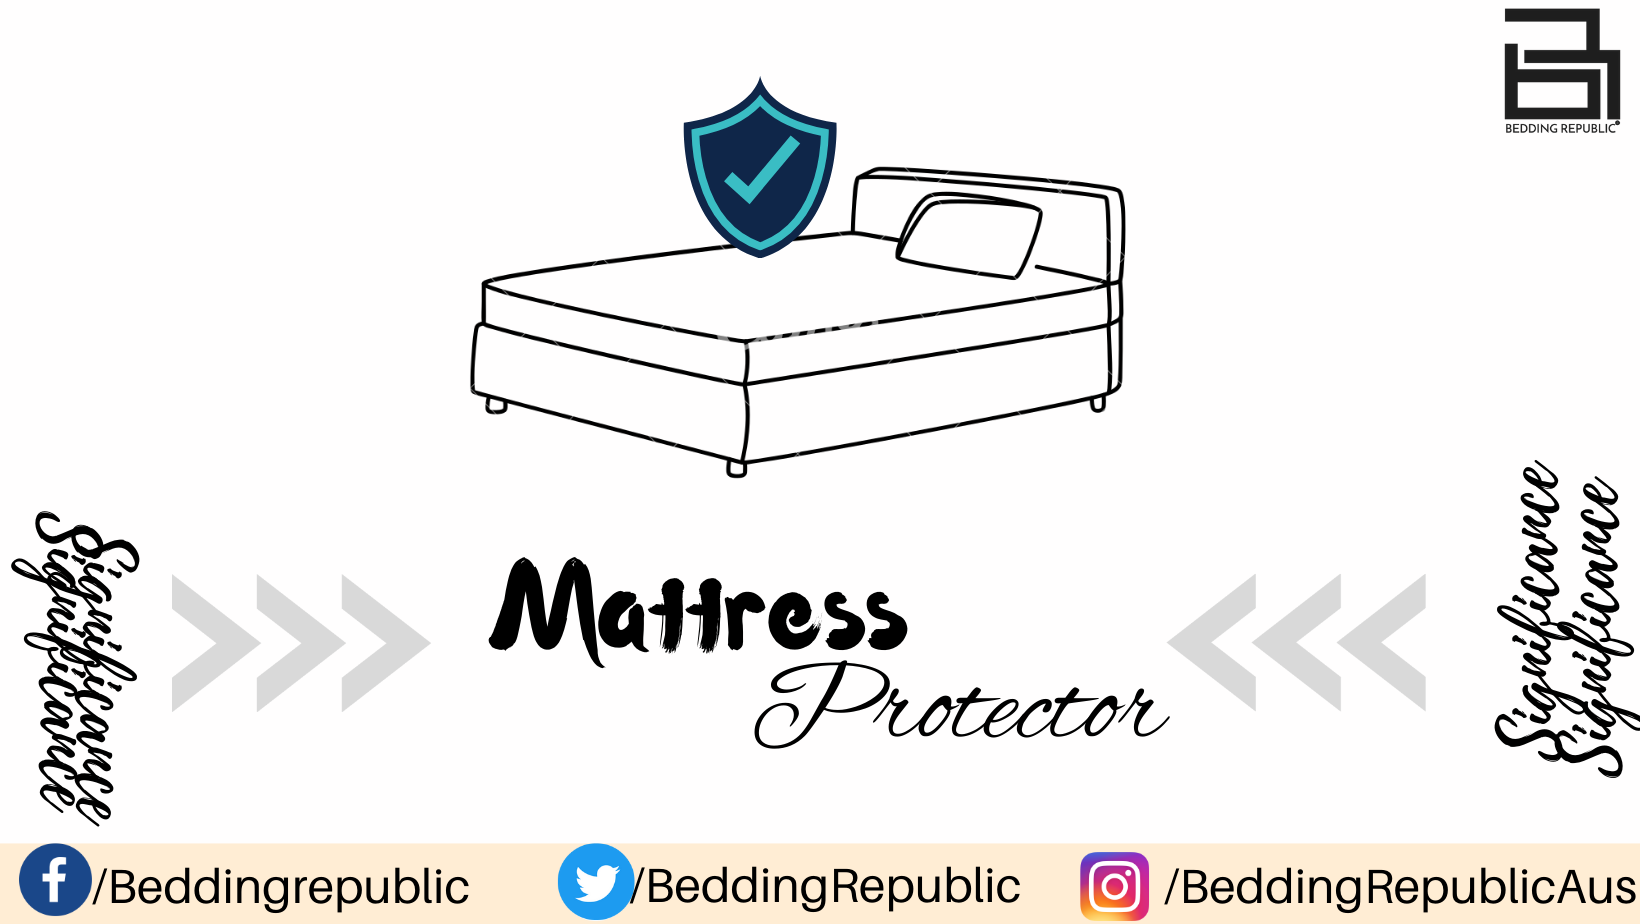 should i use a mattress protector